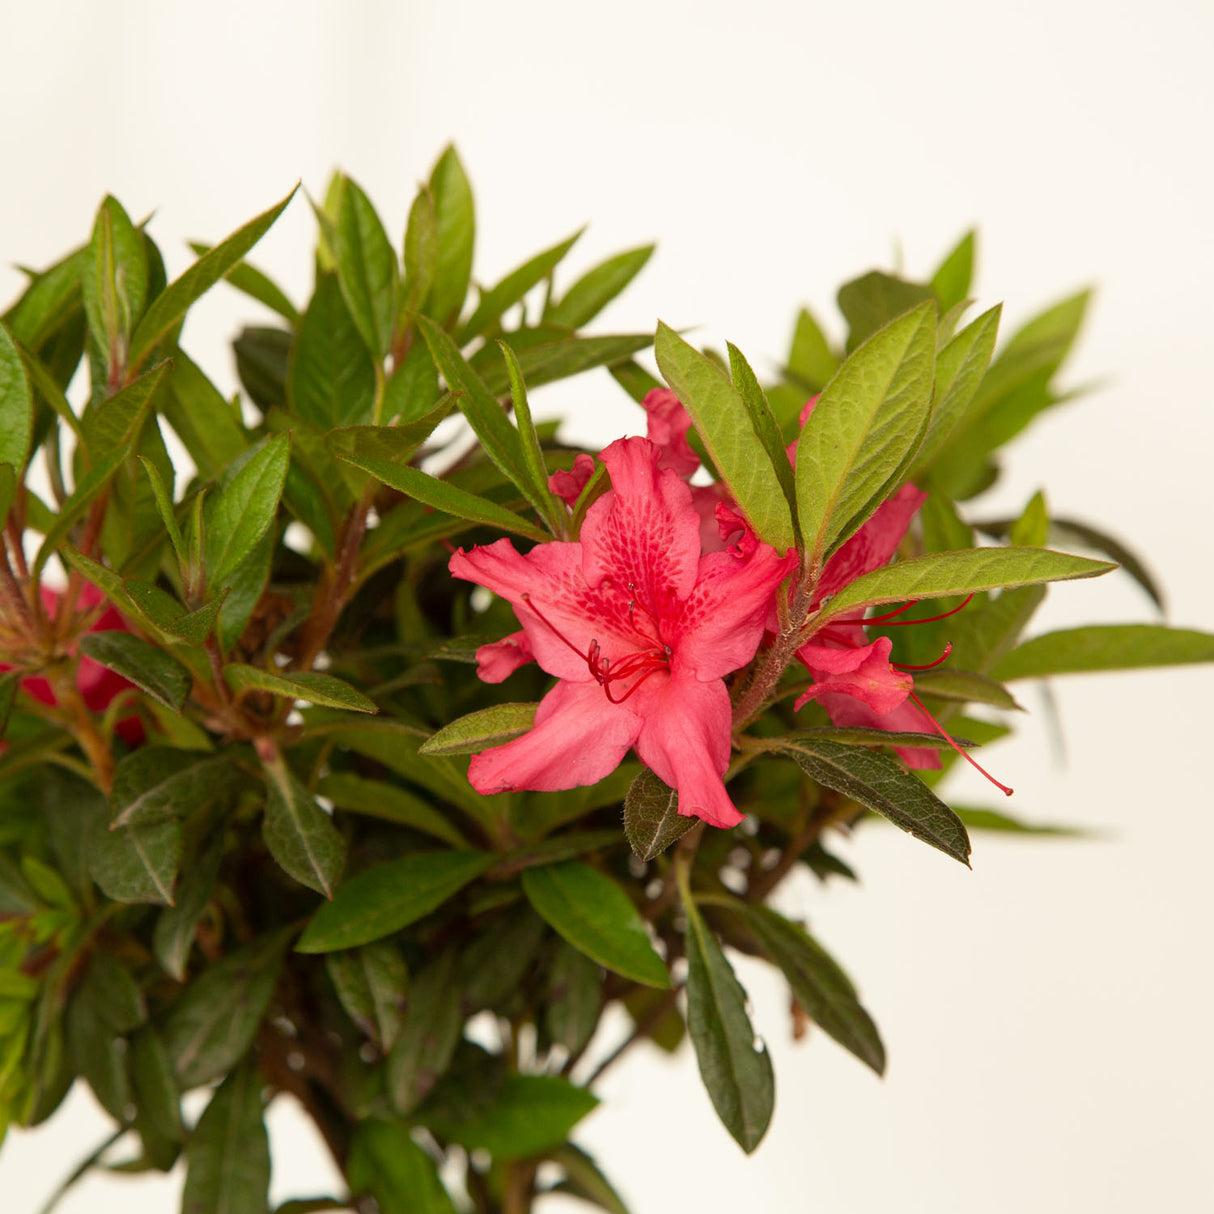 encore azalea sundance for sale online pink flower blooms